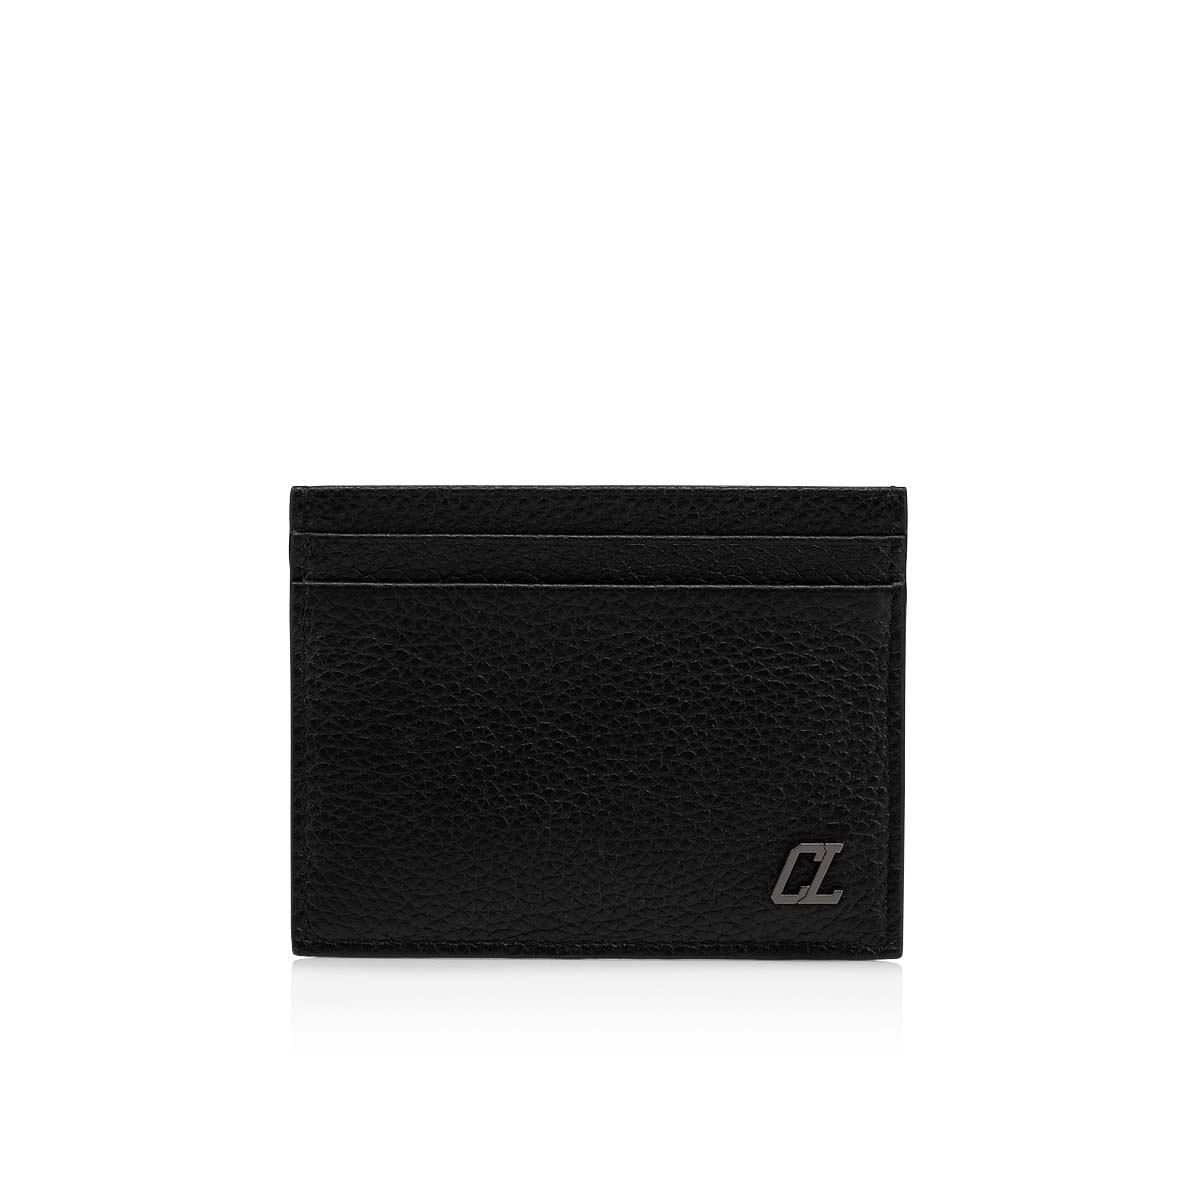 Kios - Card holder - Calf leather - Black - Christian Louboutin